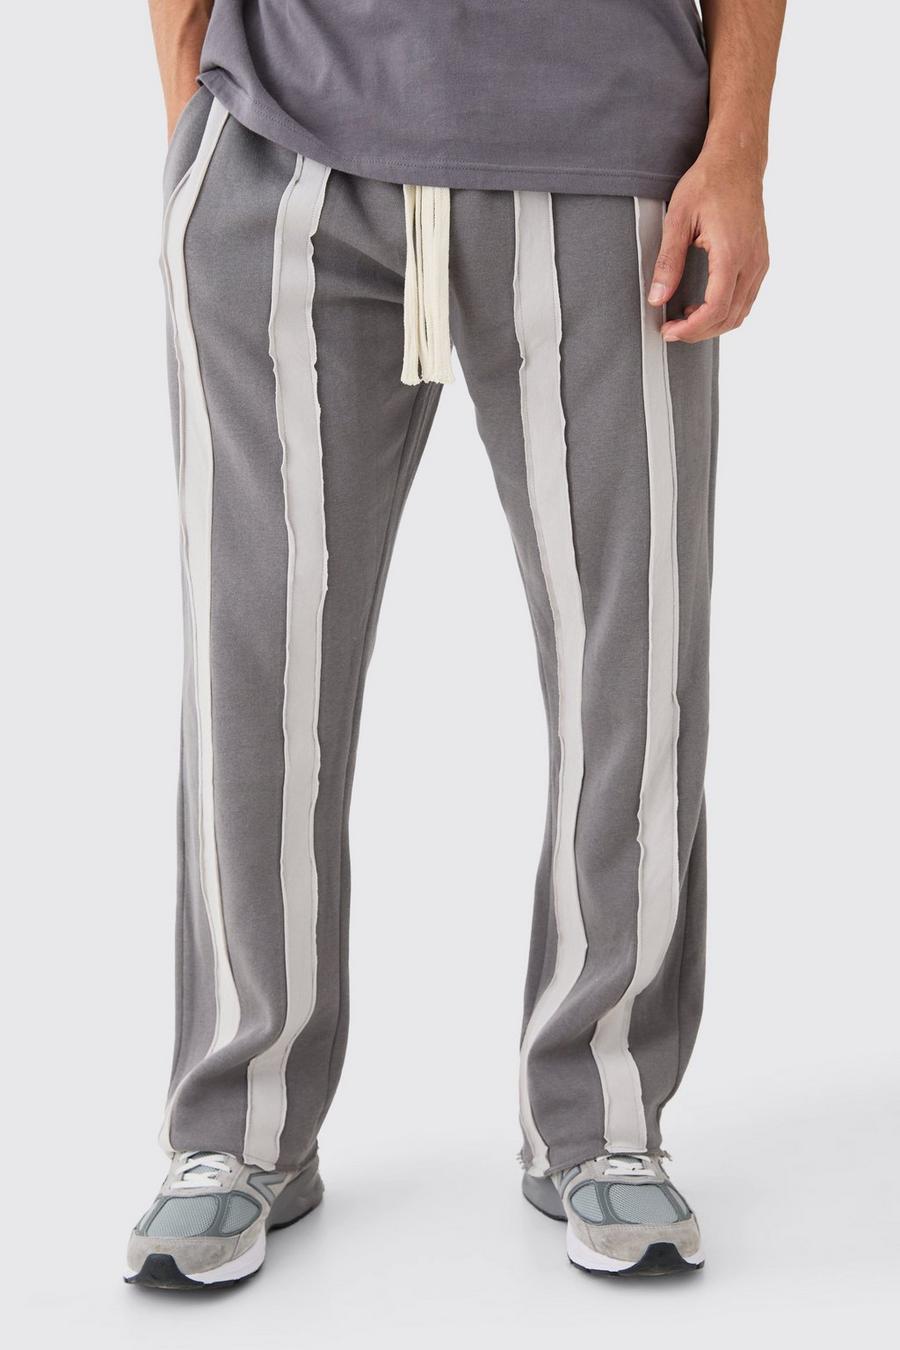 Pantaloni tuta rilassati a righe Cut & Sew con fondo grezzo, Charcoal